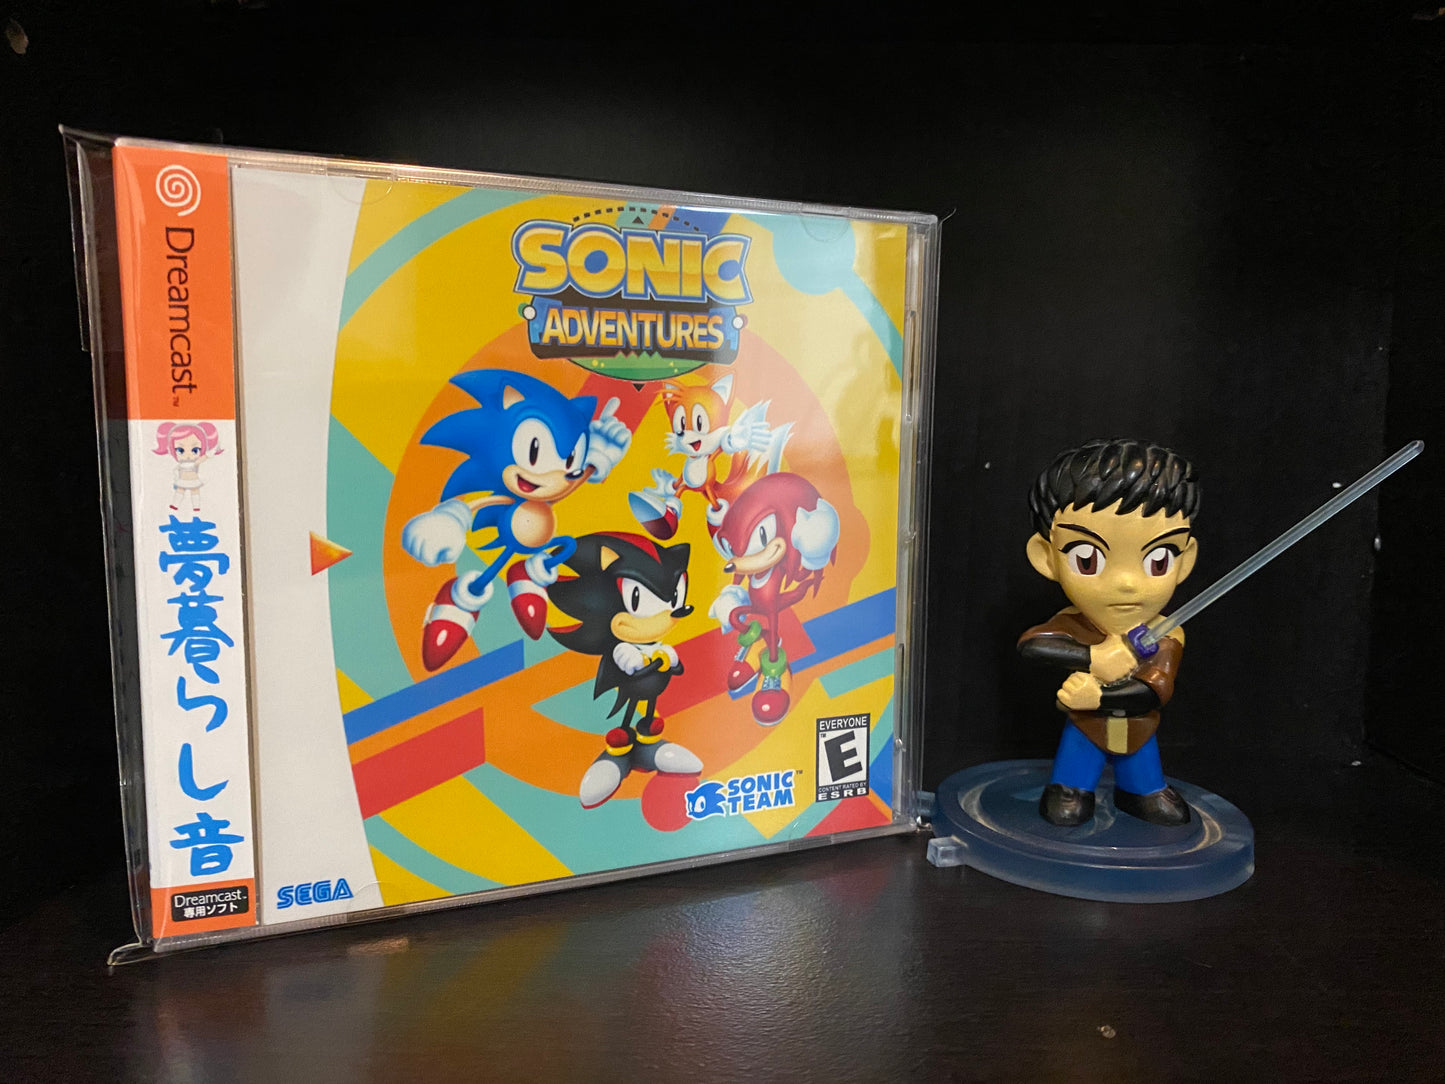 Sonic Adventures (Sonic Adventure 1&2) [Sega Dreamcast] Reproduction